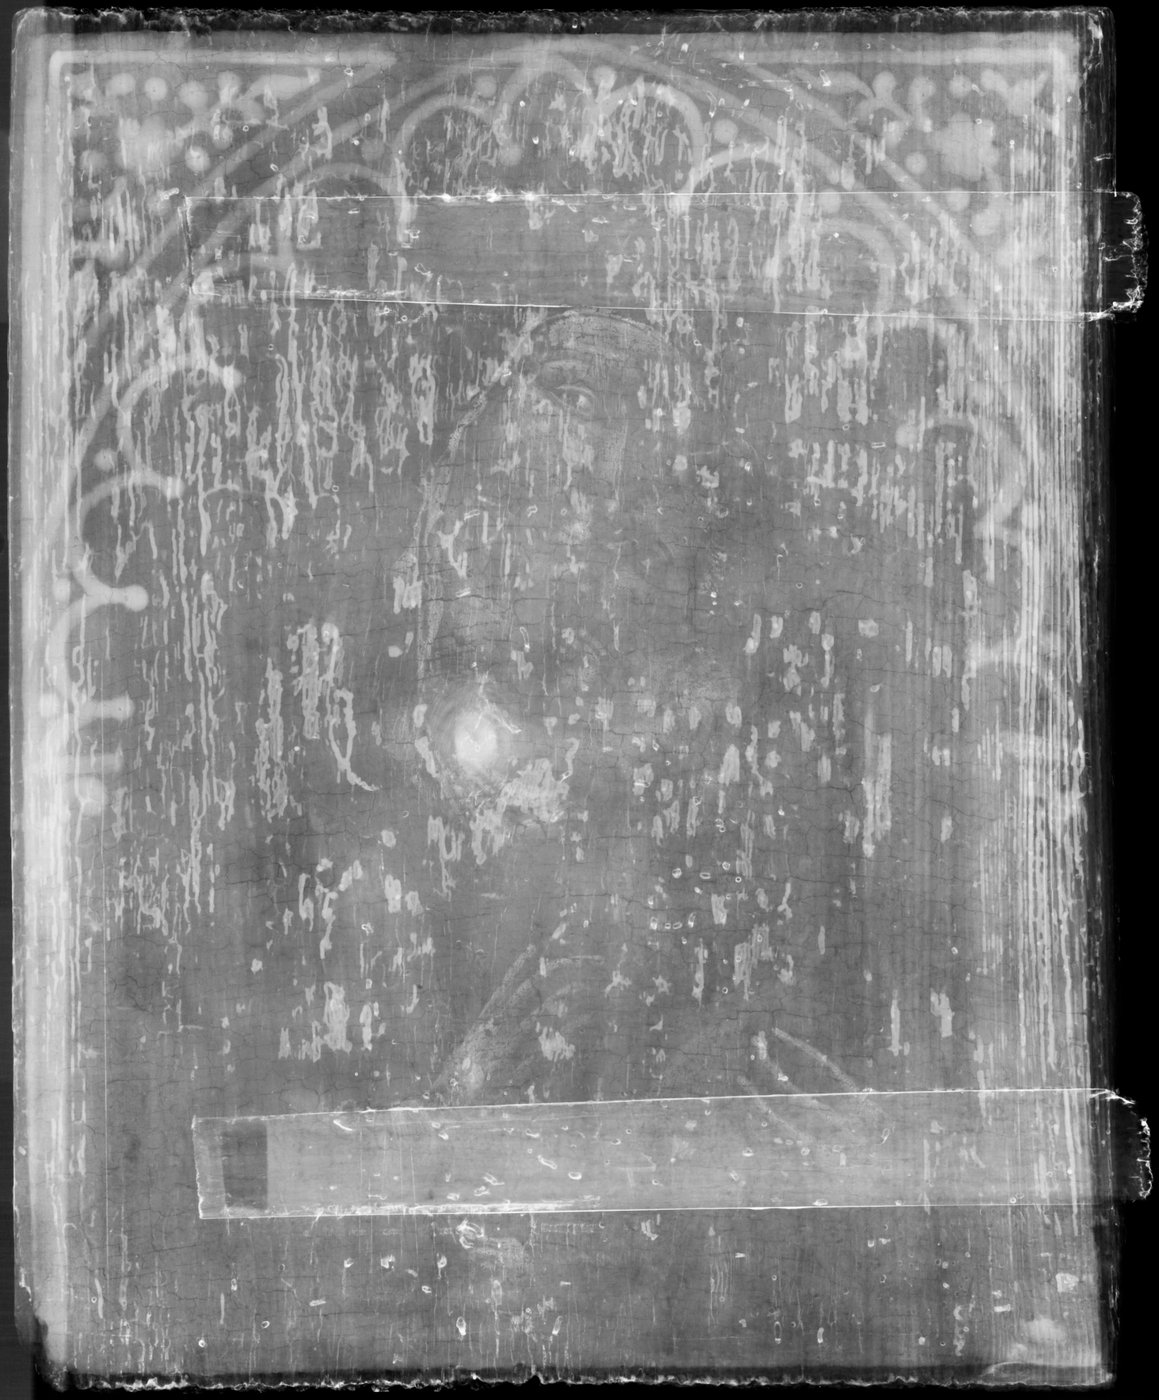 Eine schwarzweiße Aufnahme eines Gemäldes einer Madonna mit Kind auf einer Holztafel. Das Bild ist eine Röntgenradiografieaufnahme. Die Figuren sind schwach erkennbar. Die unregelmäßige Struktur des Holzes ist durch helle und dunkle Partien deutlich erkennbar.